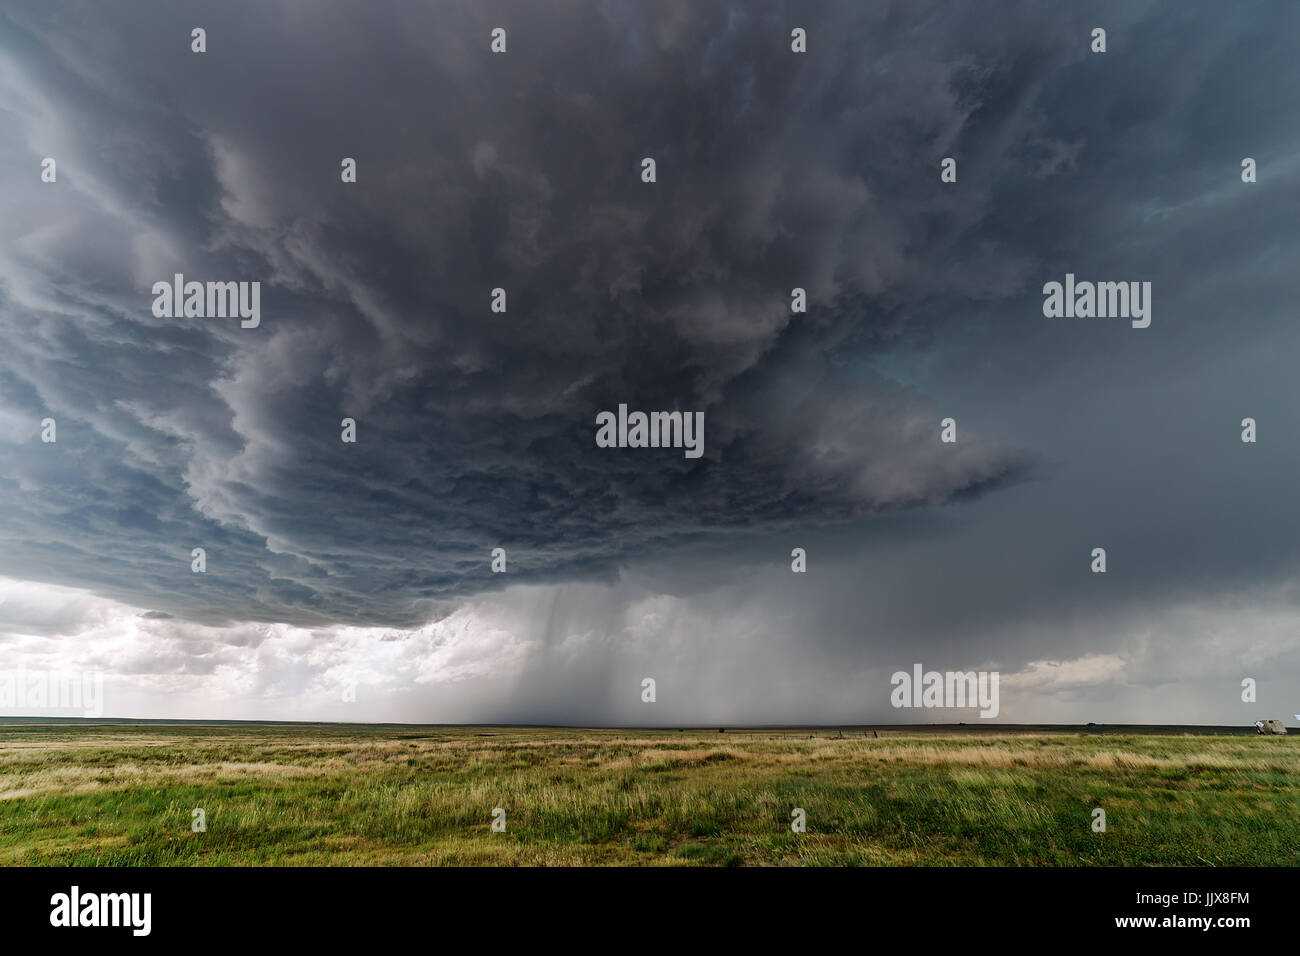 Dark storm nuages d'un orage supercellulaire orage Banque D'Images